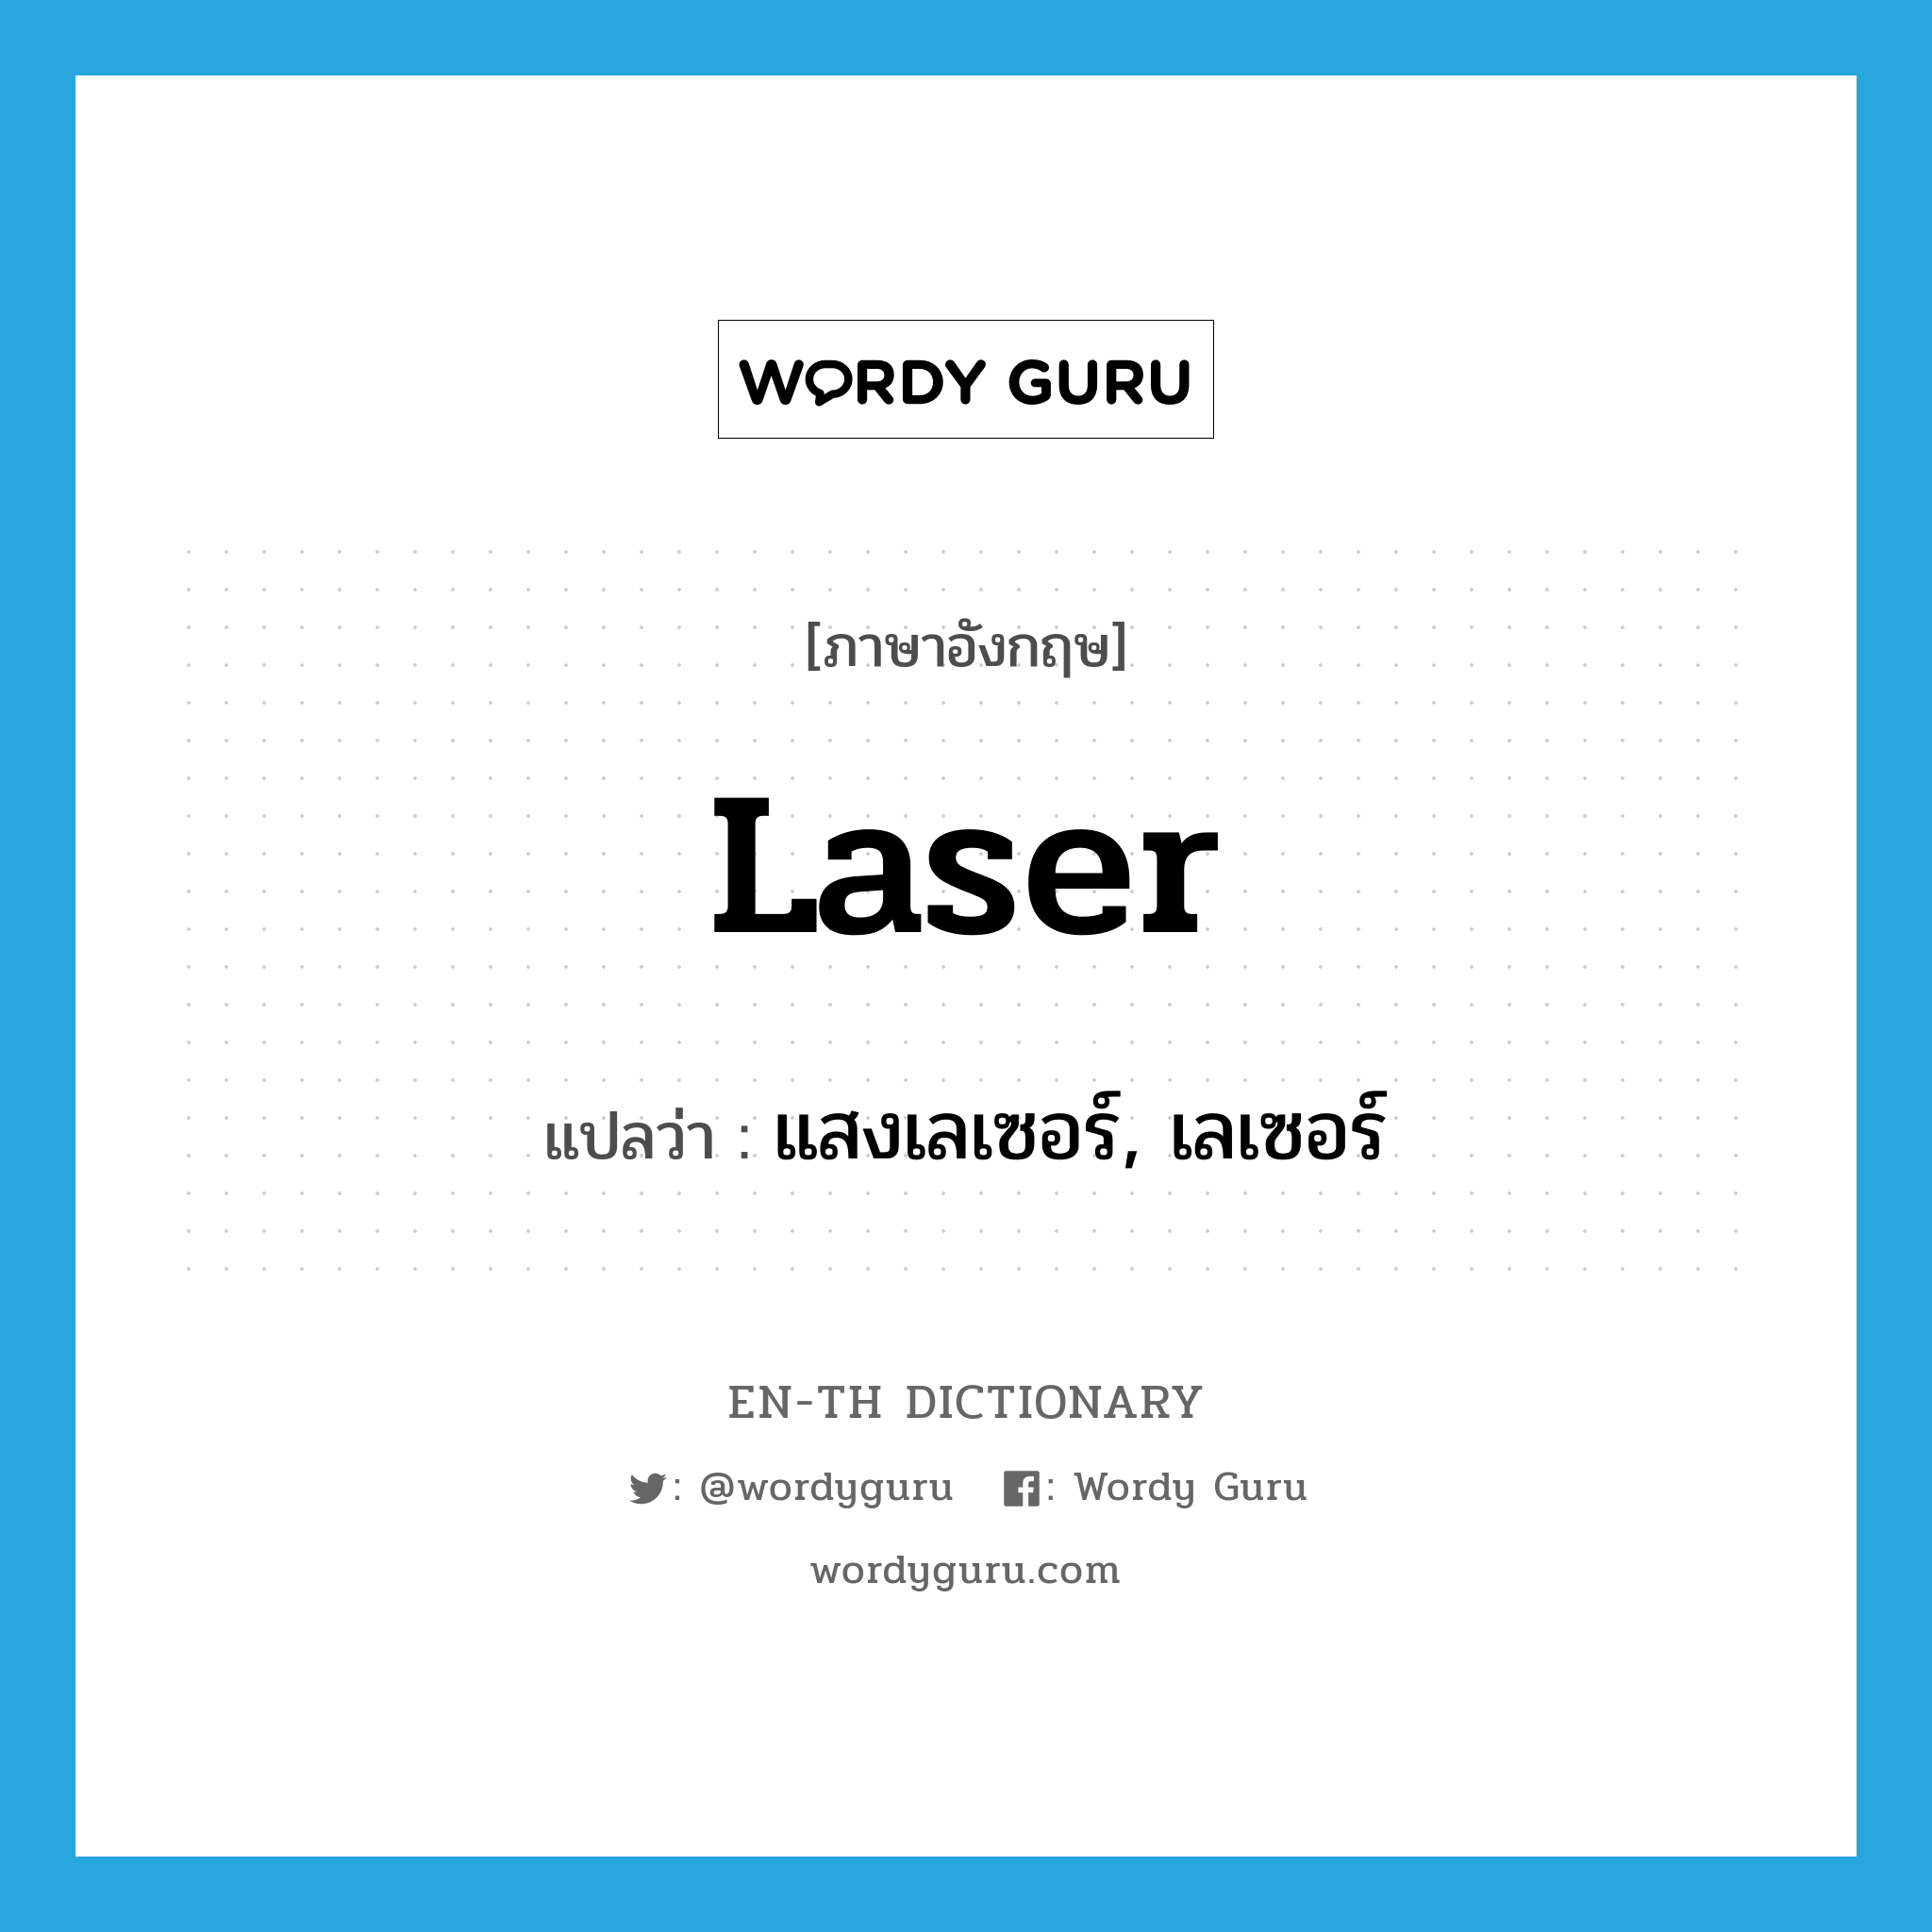 laser แปลว่า?, คำศัพท์ภาษาอังกฤษ laser แปลว่า แสงเลเซอร์, เลเซอร์ ประเภท N หมวด N